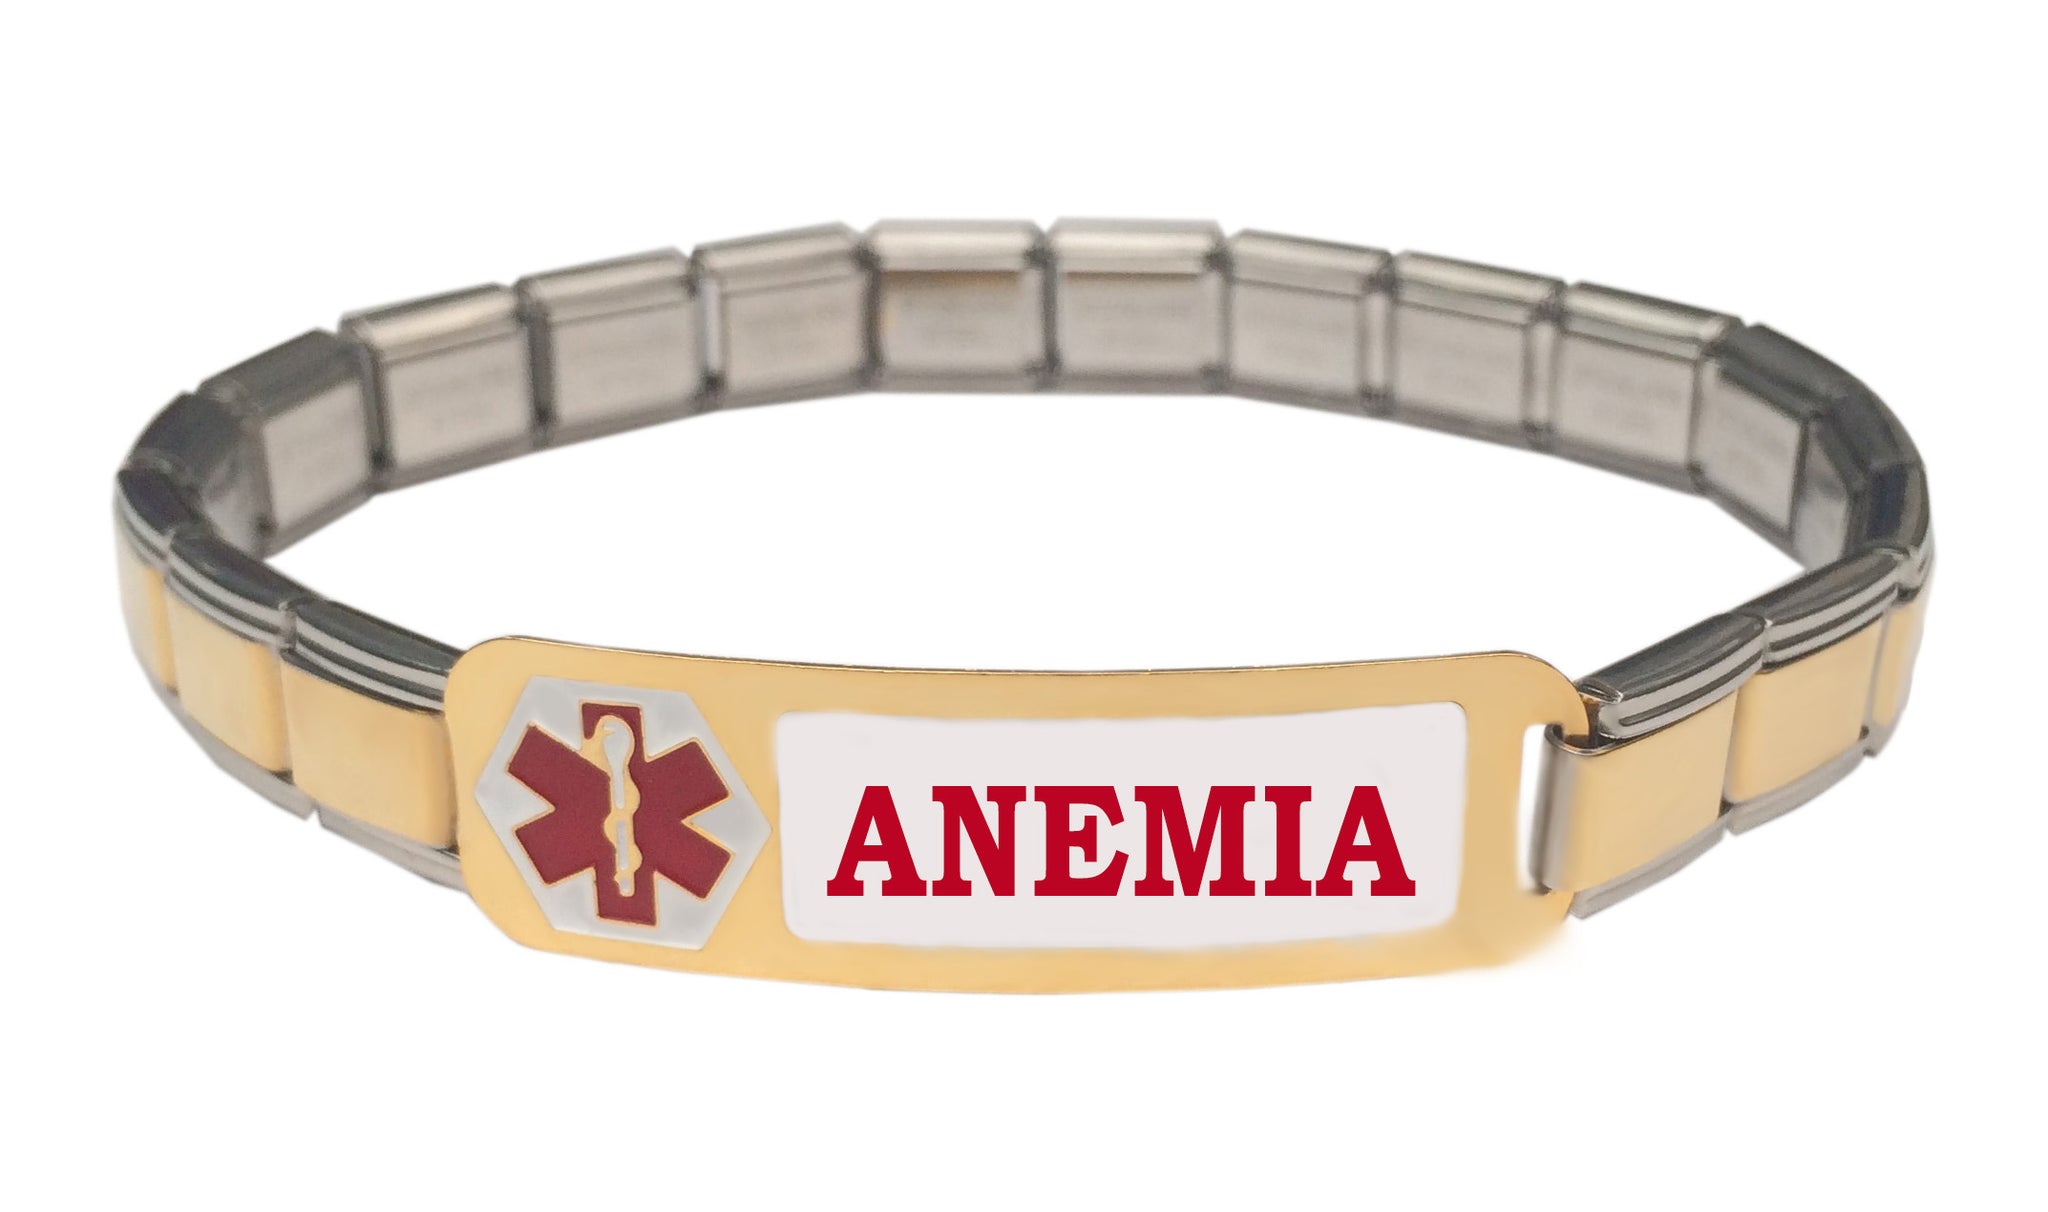 Anemia Medical Alert 9mm Italian Charm Starter Bracelet